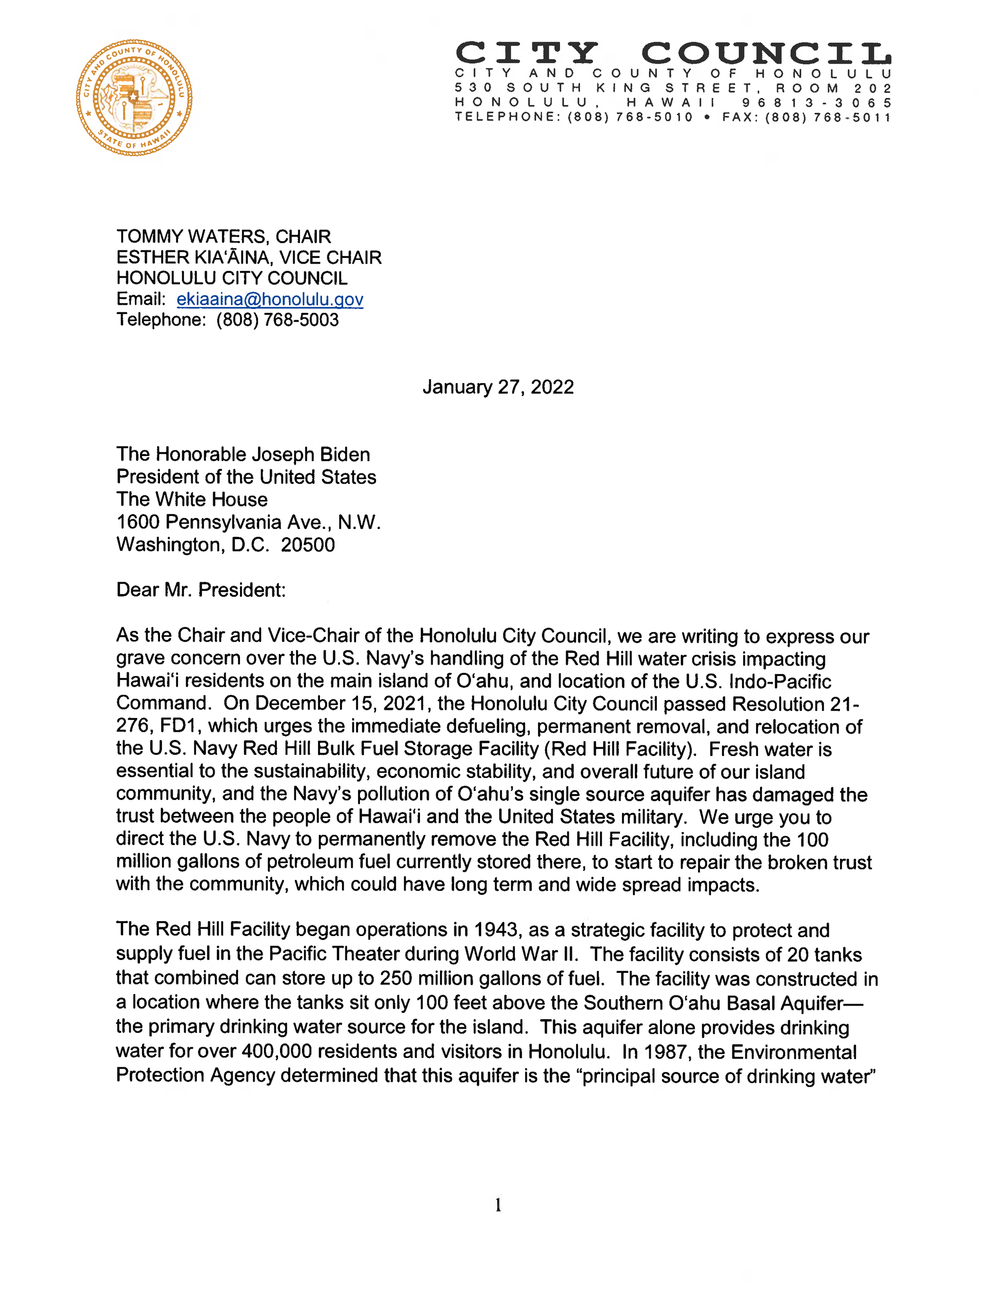 Necklet Udløbet Undertrykkelse Letter to President Joseph Biden from the Honolulu City Council leadership  — Honolulu City Council